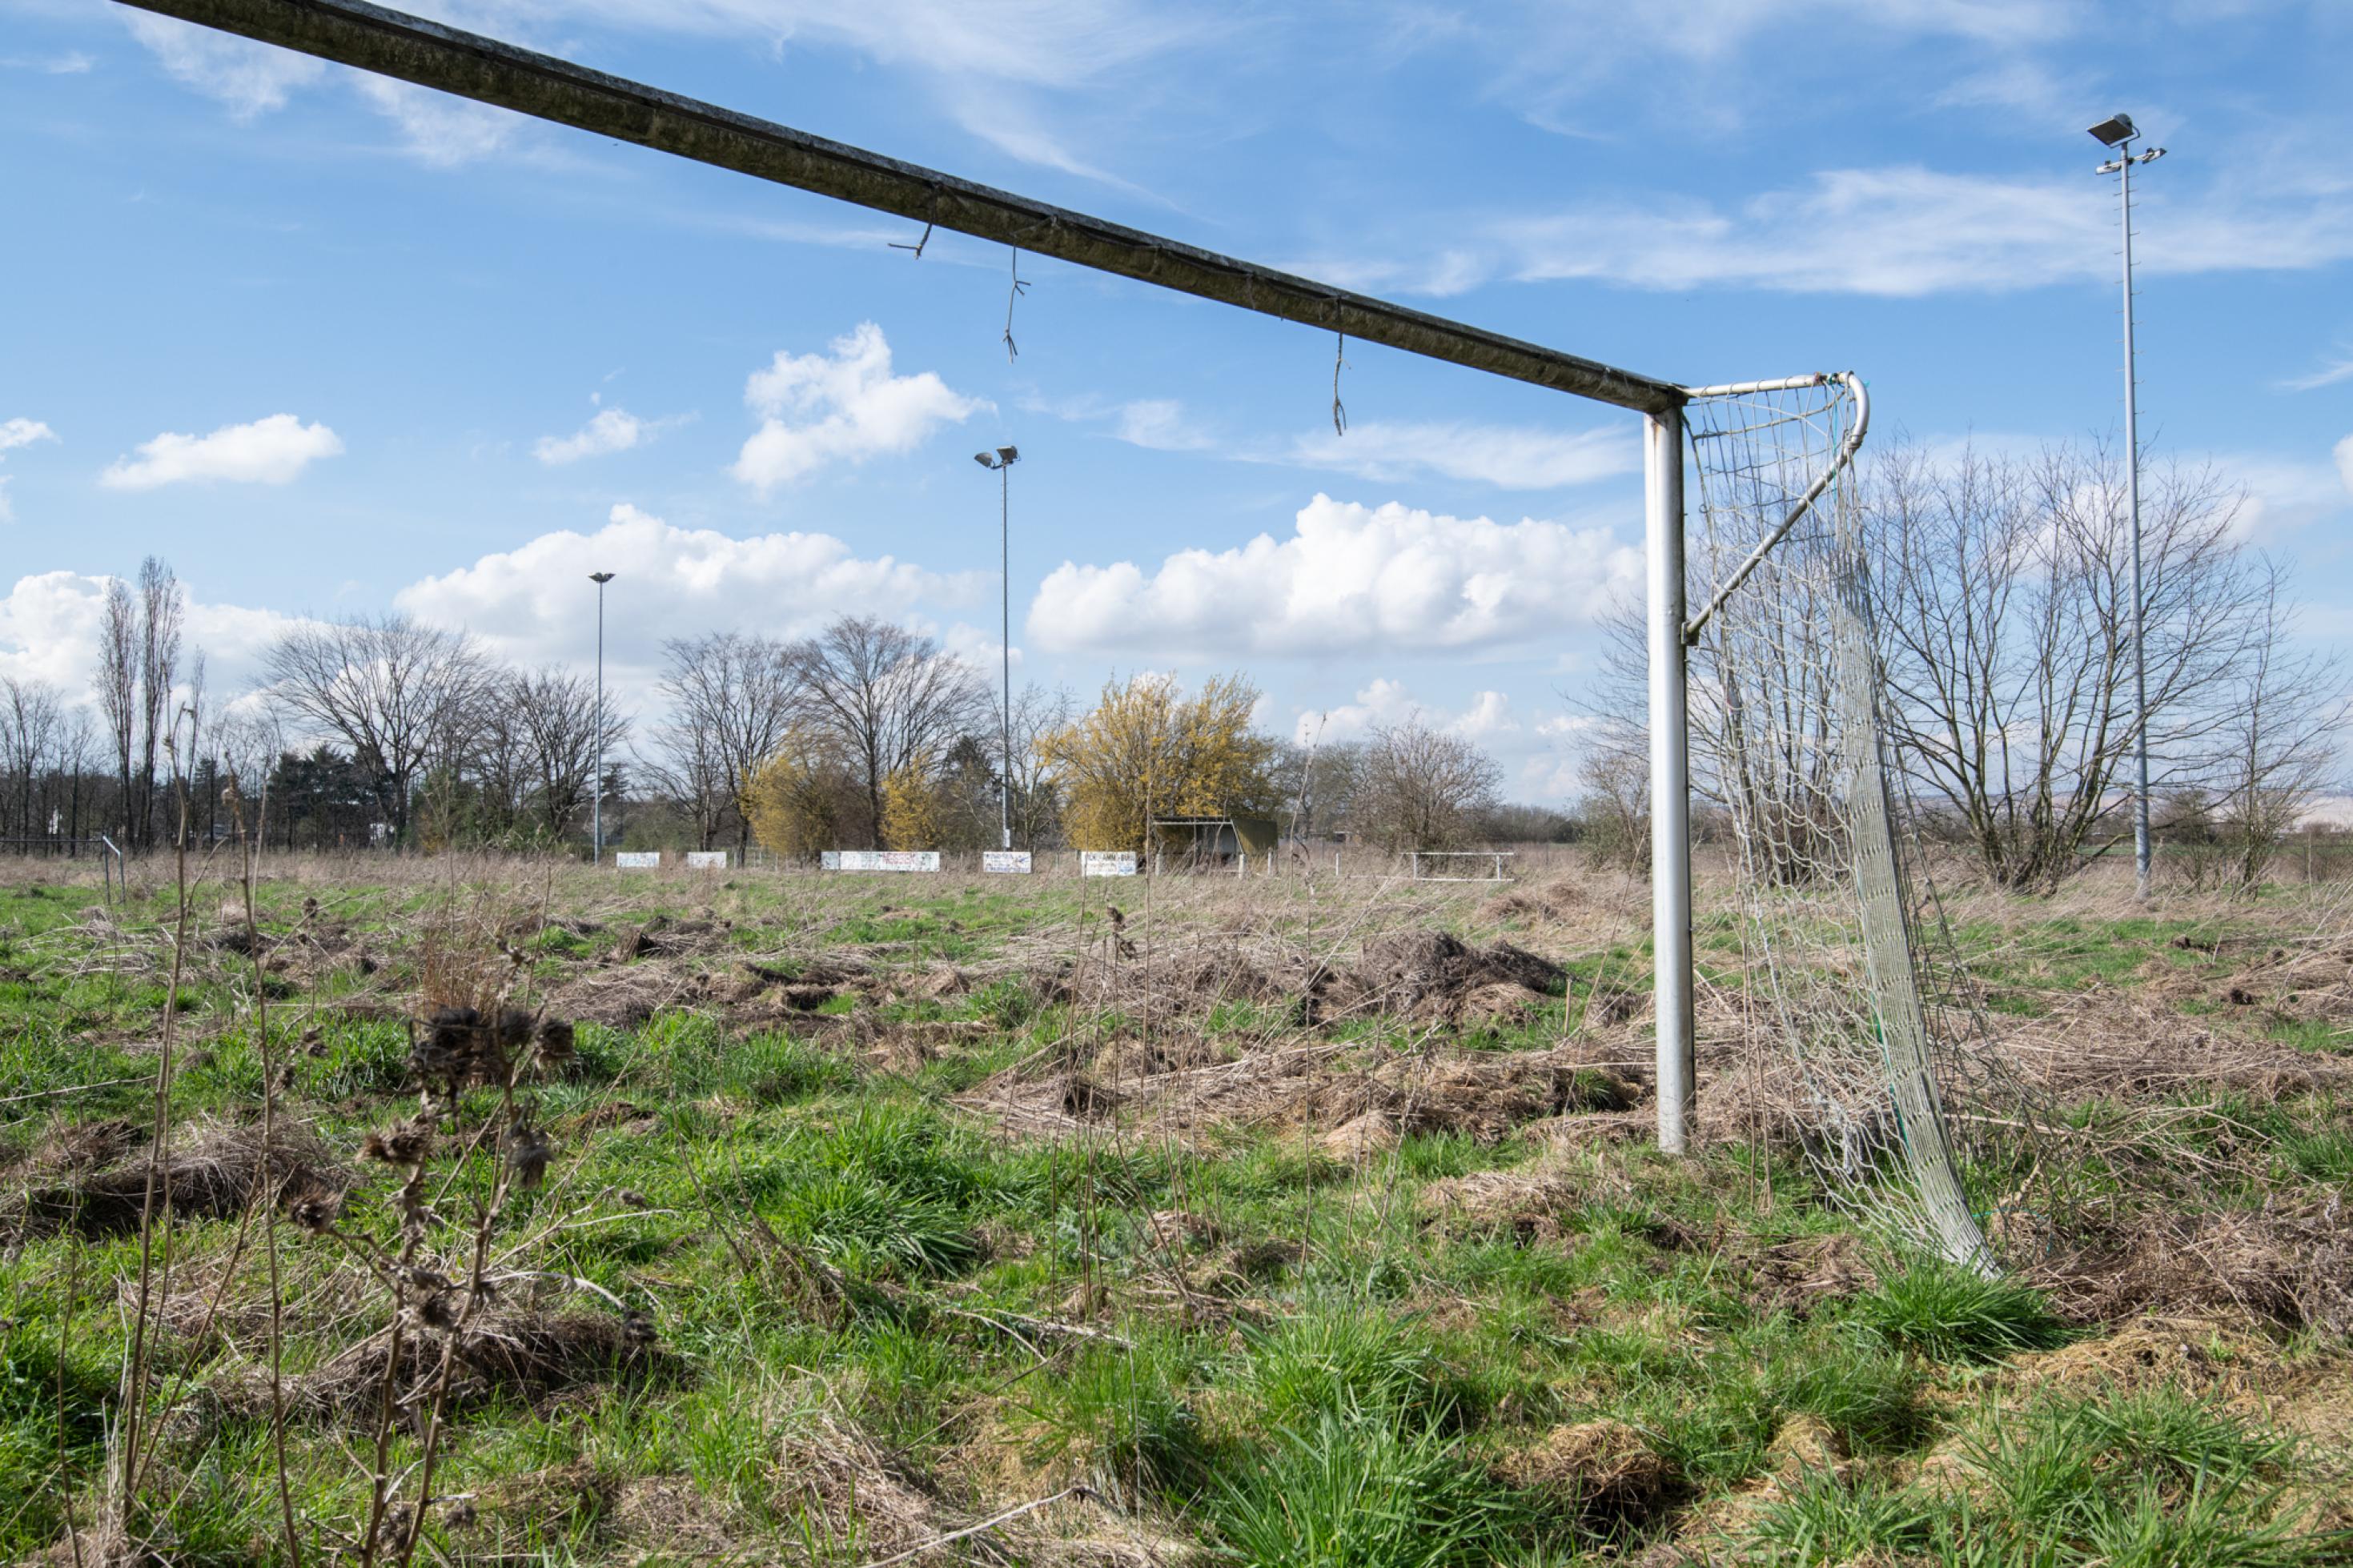 Blick durch ein kaputtes Fußbalaltor auf einen hoch mit Pflanzen bewachsenen einstigen Fußballplatz.